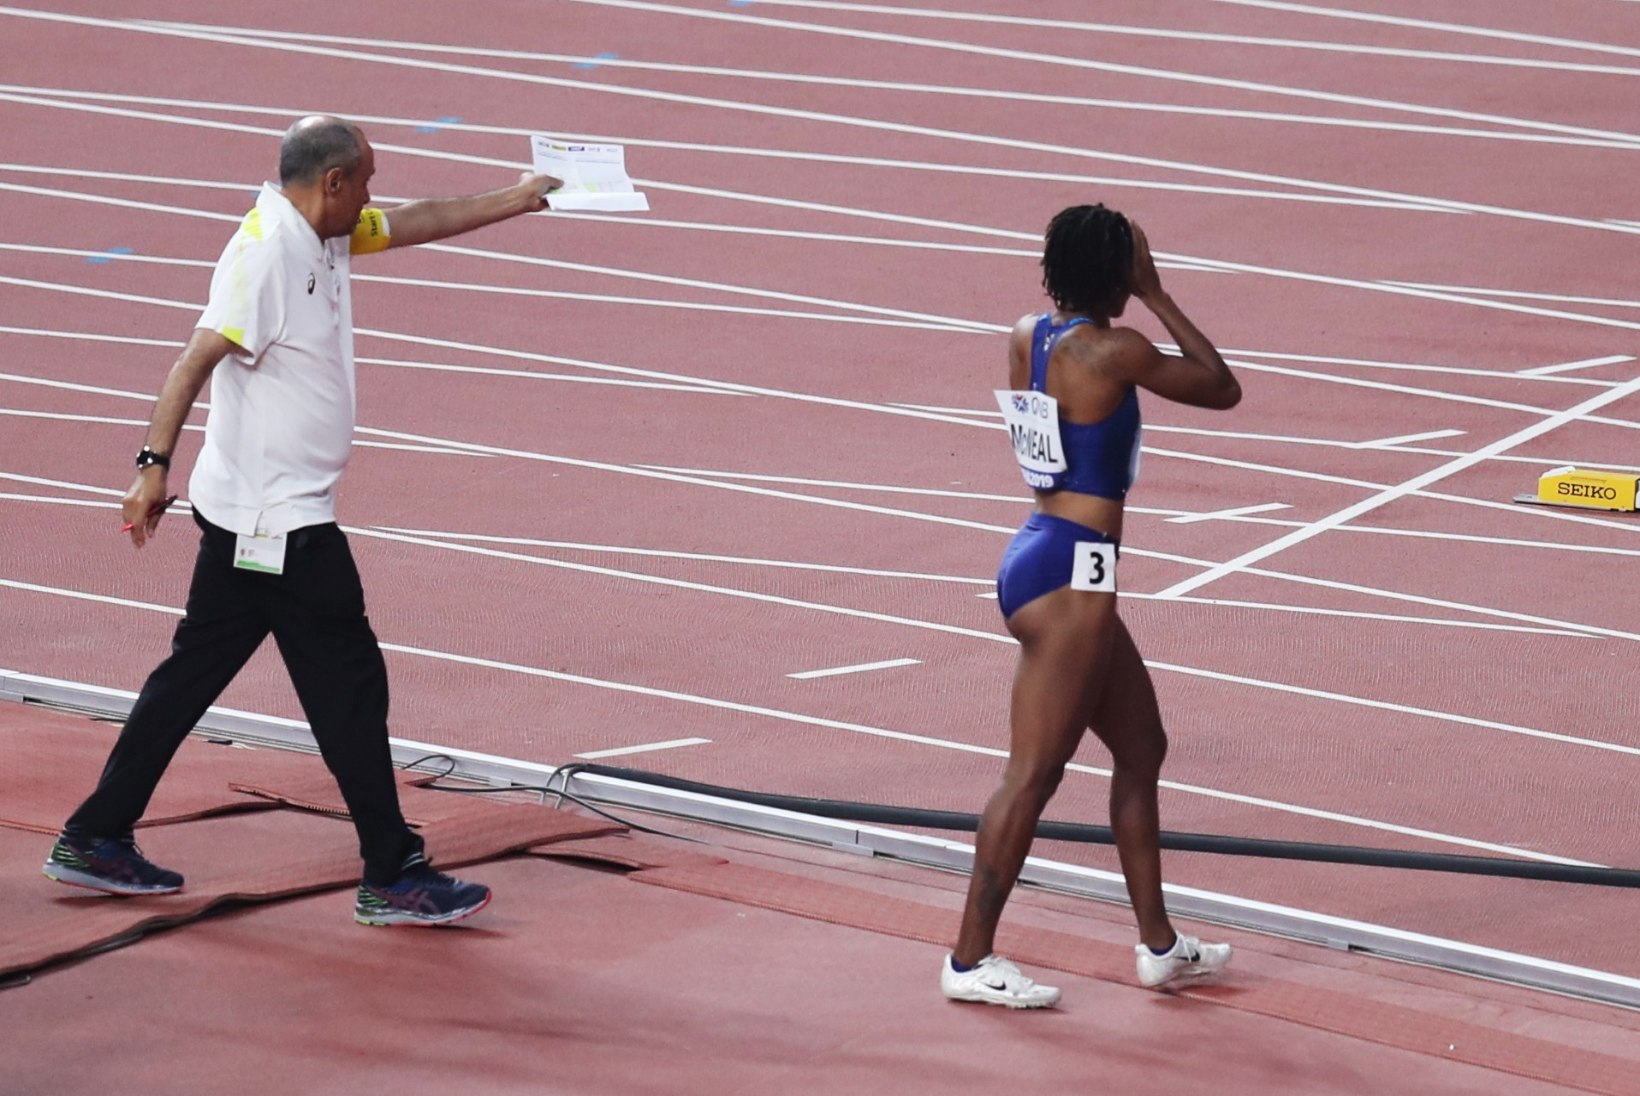 FOTOD | Tõkkejooksu olümpiavõitja MM lõppes pisarais 